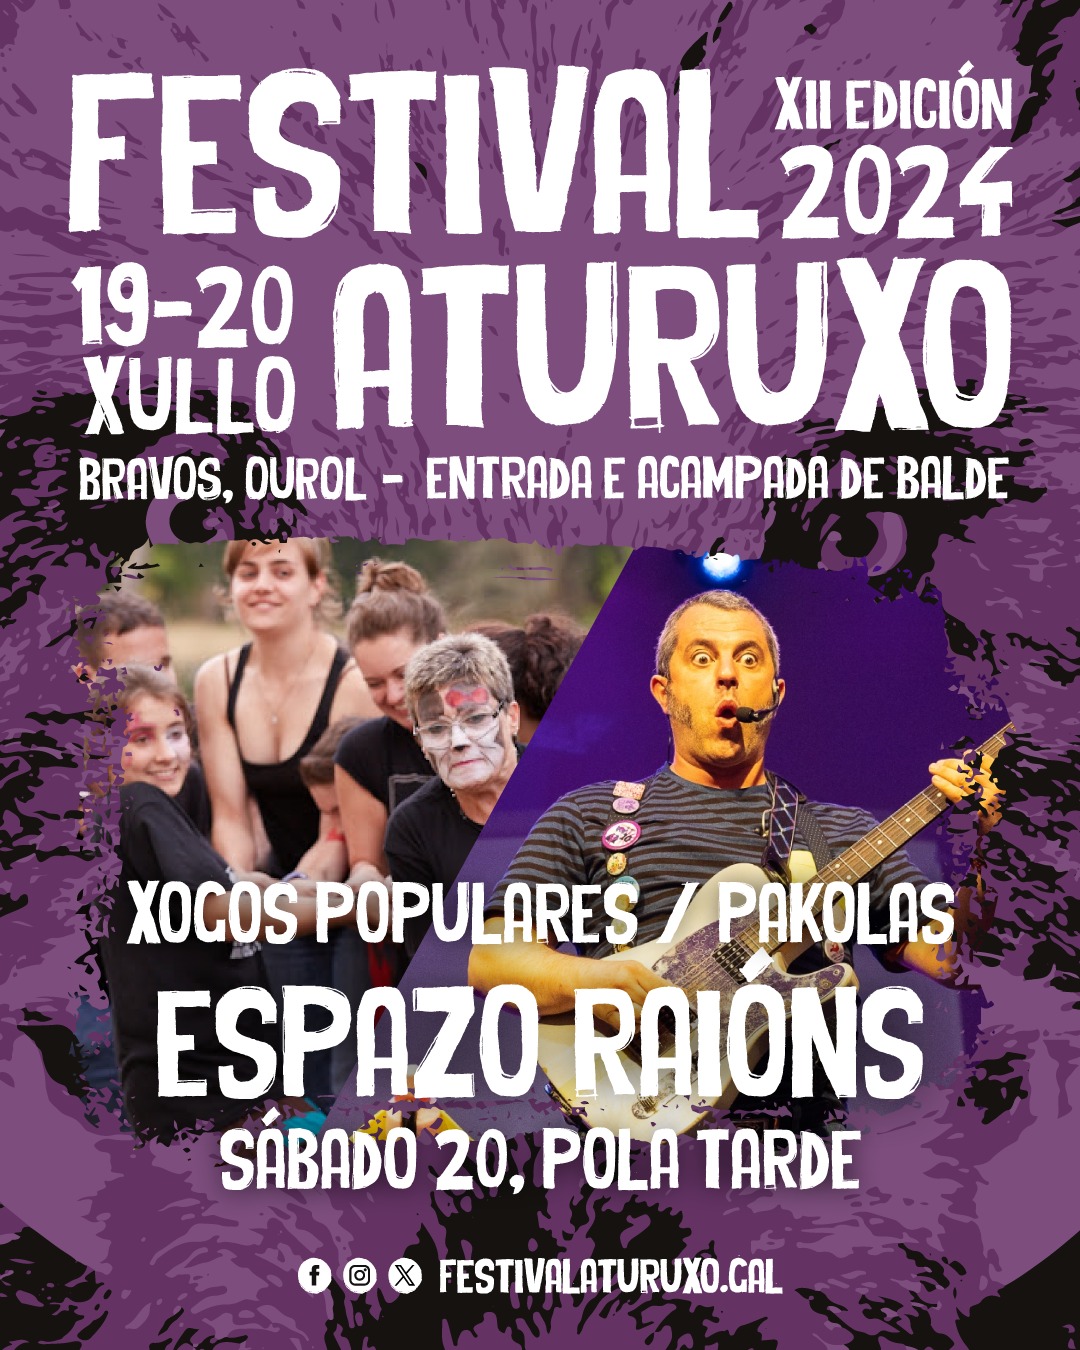 Nova zona: Espazo Raións - Festival Aturuxo 2024 - XII Edición